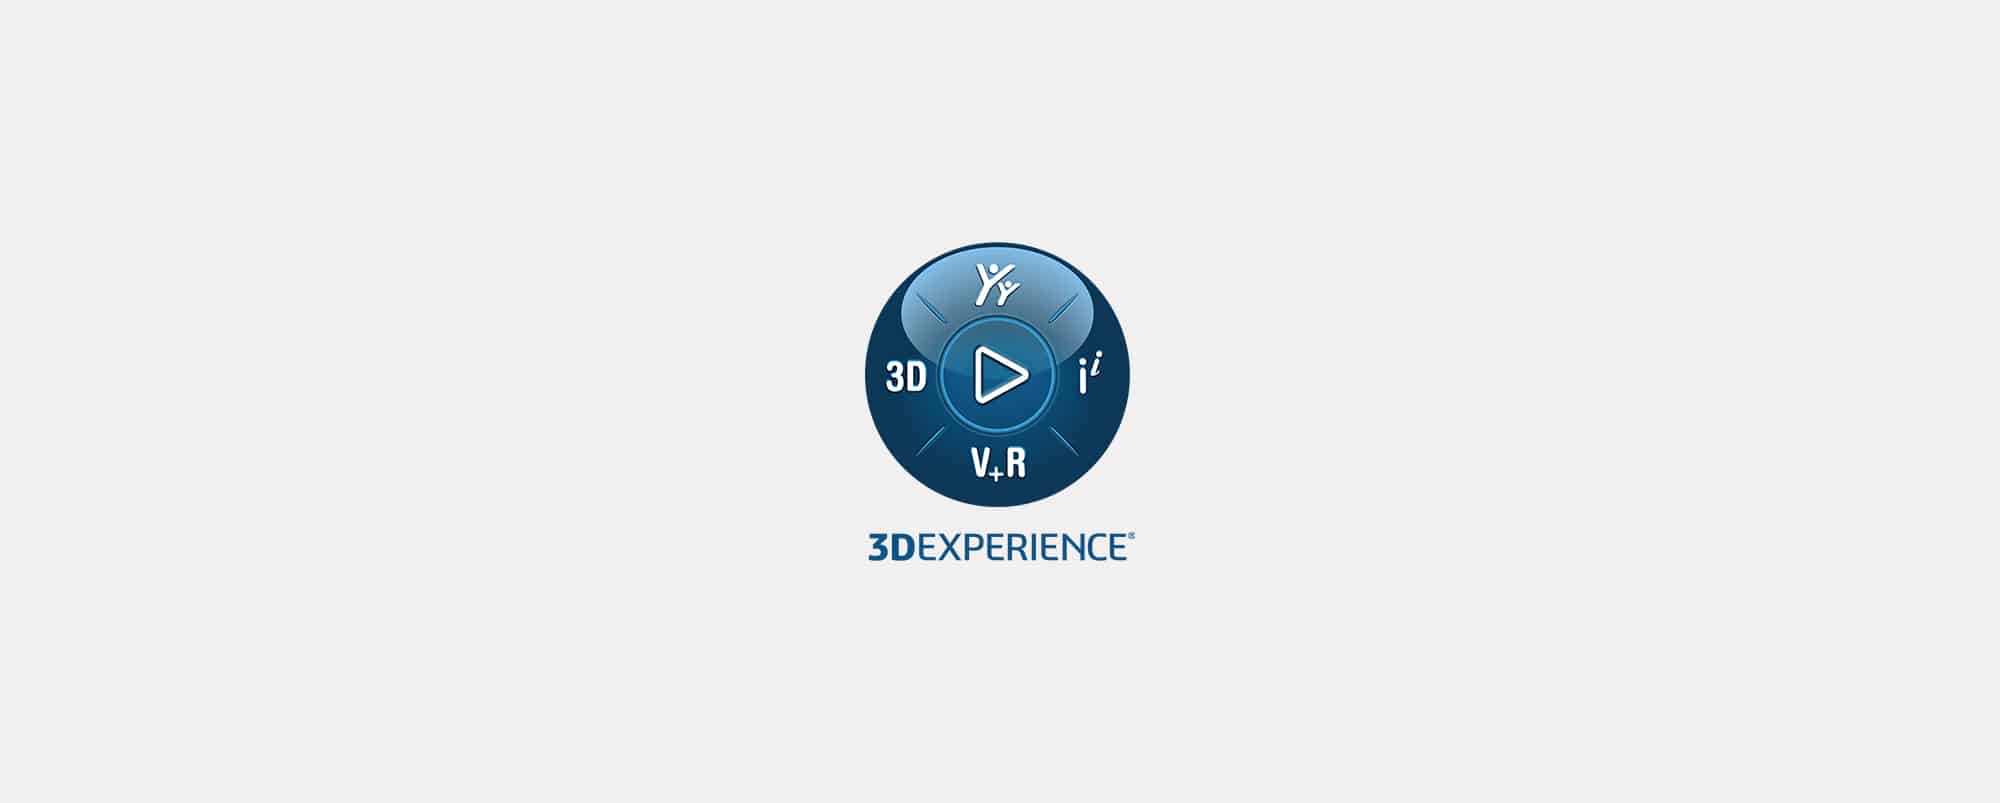 3DEXPERIENCE Update - 3DSwymer Verbesserungen